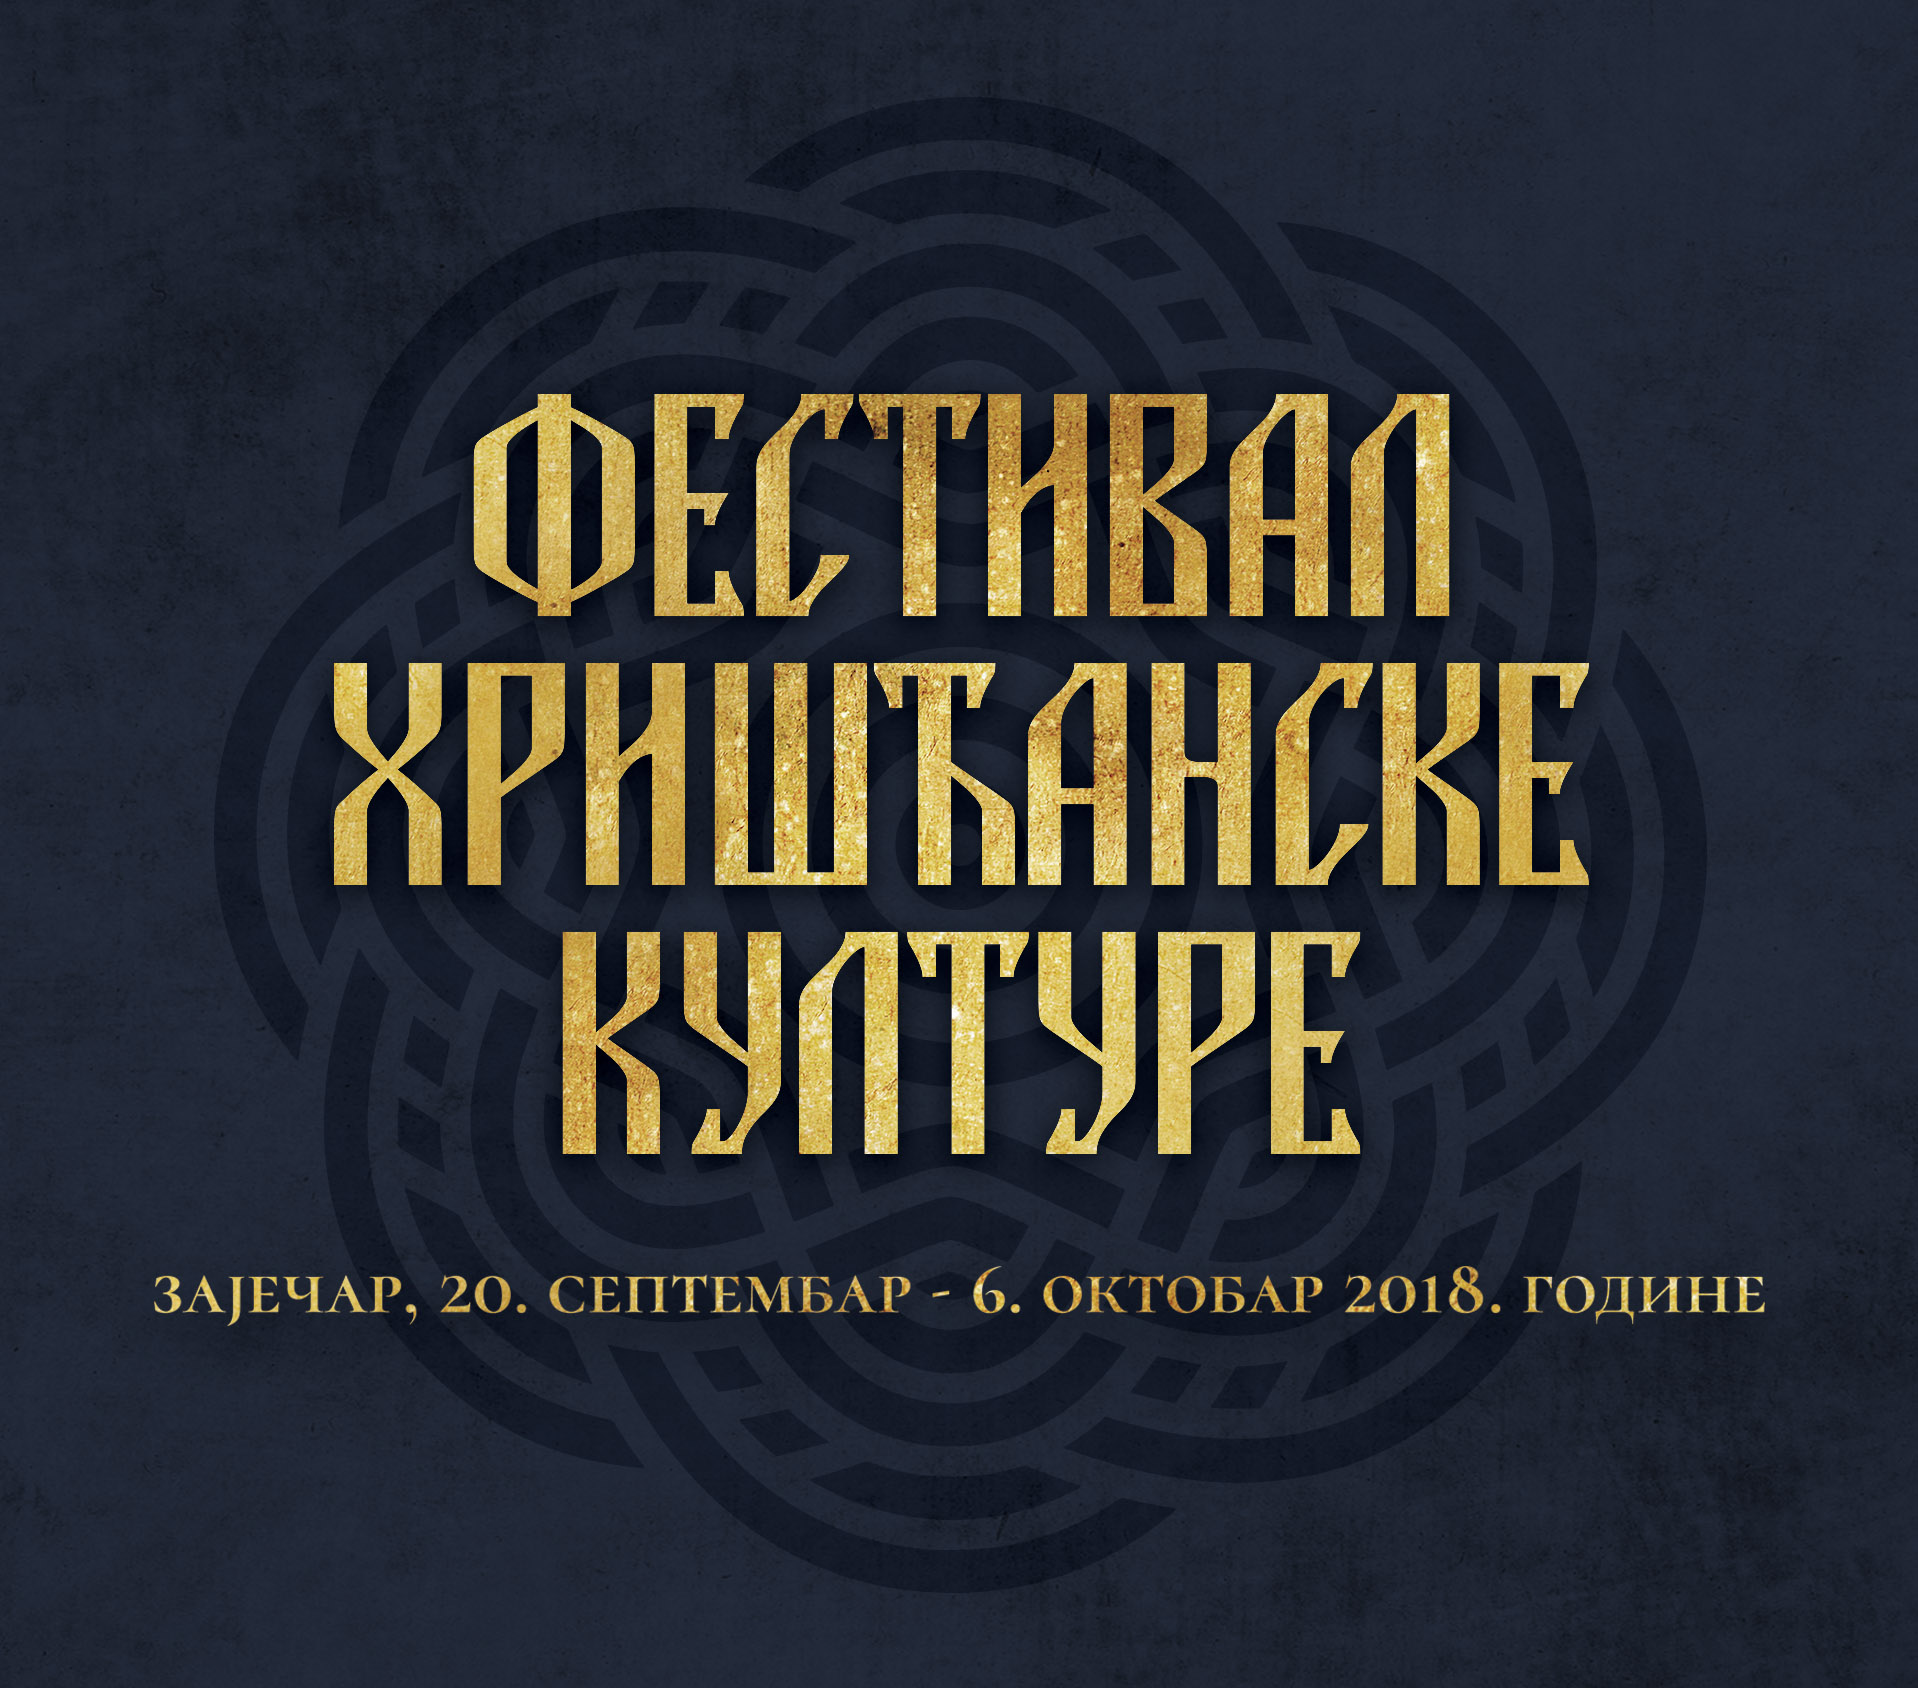 Eparhija timočka i Grad Zaječar domaćini trećeg Festivala hrišćanske kulture od 20. septembra – 6. oktobra 2018. godine.